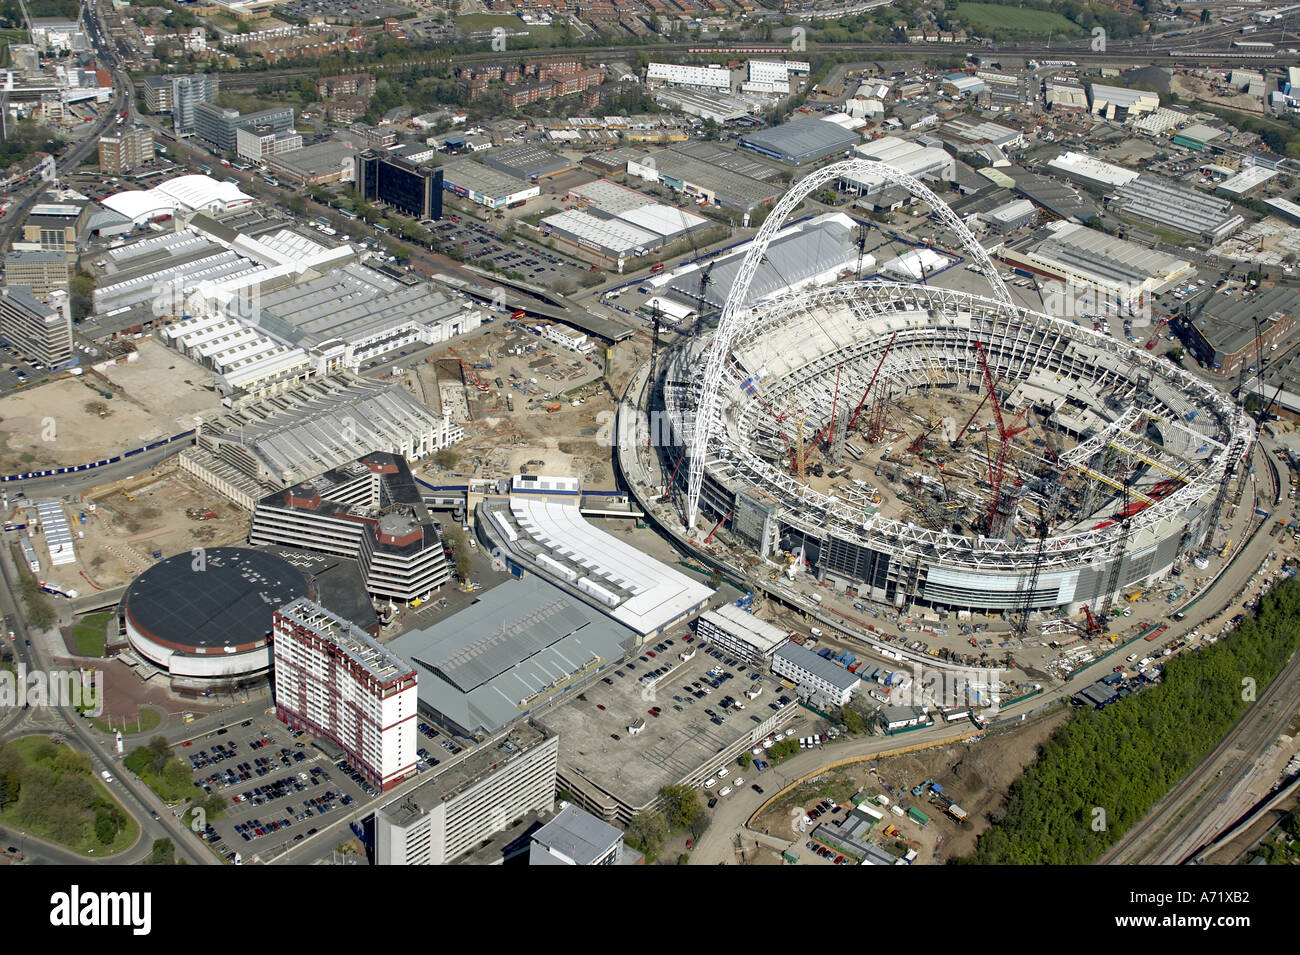 Haut niveau de l'antenne vue oblique au nord-est du nouveau stade de Wembley en construction London HA9 Angleterre Avril 2005 Banque D'Images